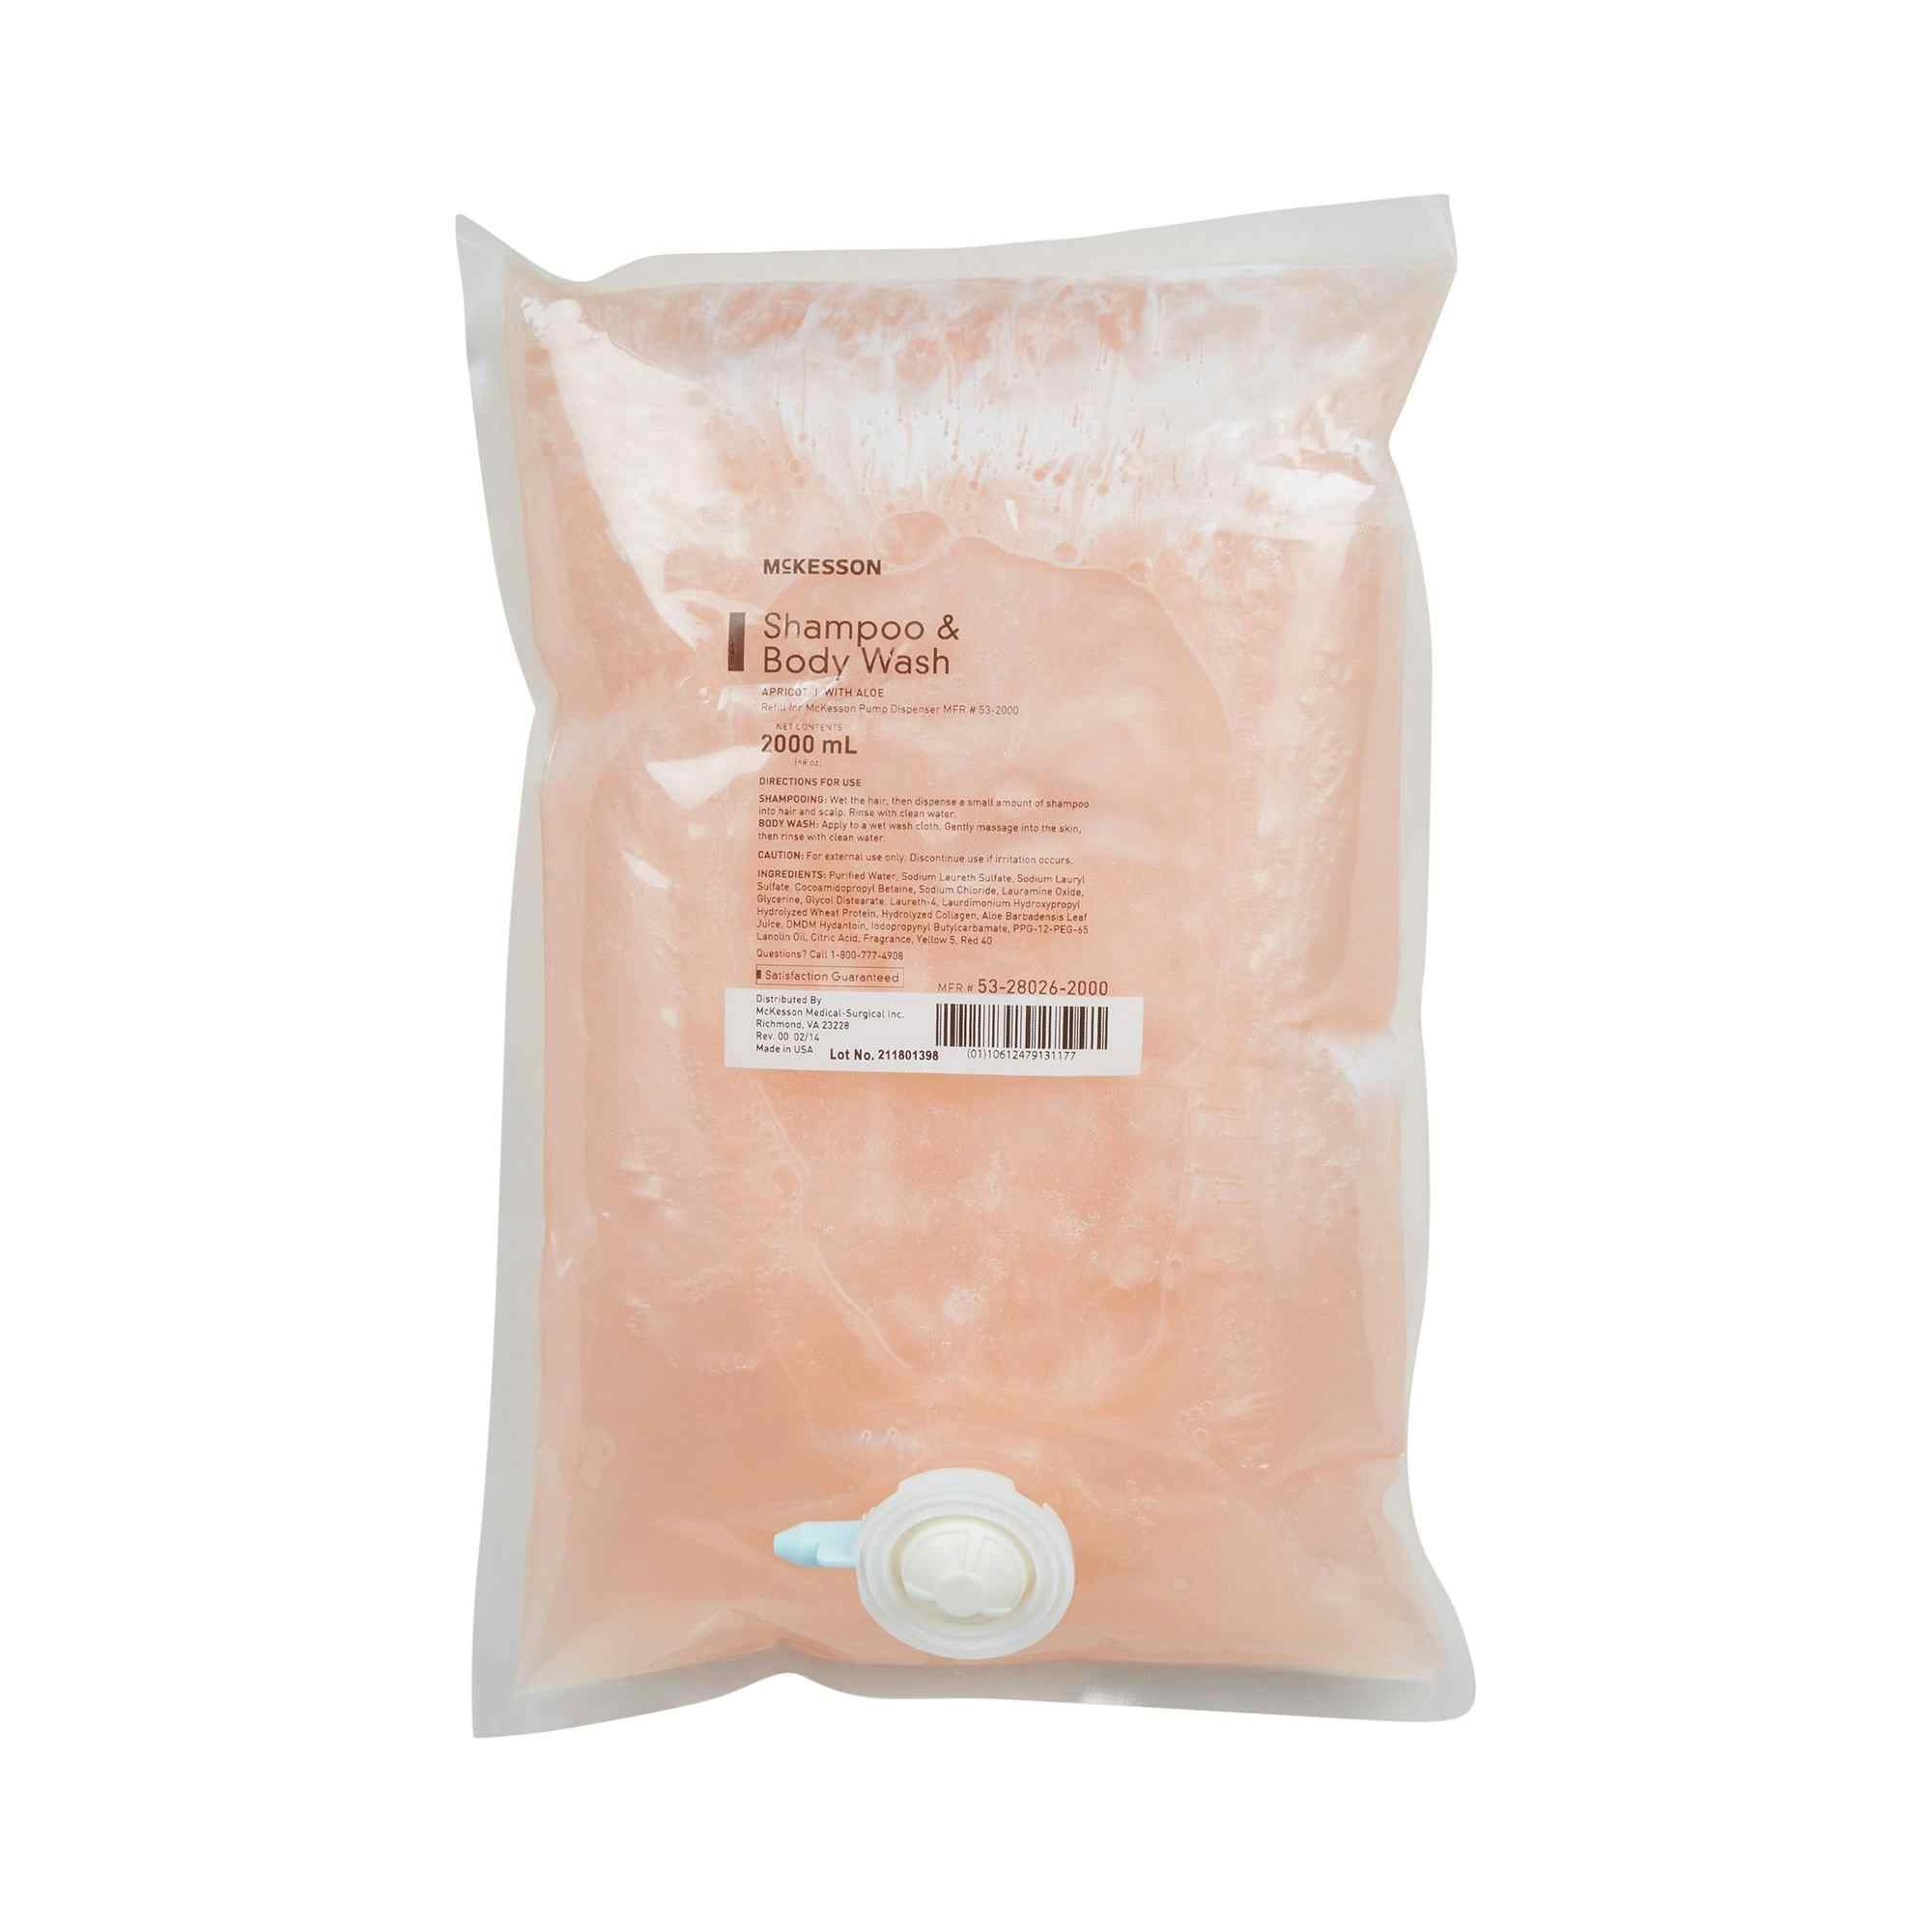 McKesson Shampoo and Body Wash Refill, Apricot Scent, 53-28026-2000, 2,000 mL - Case of 4